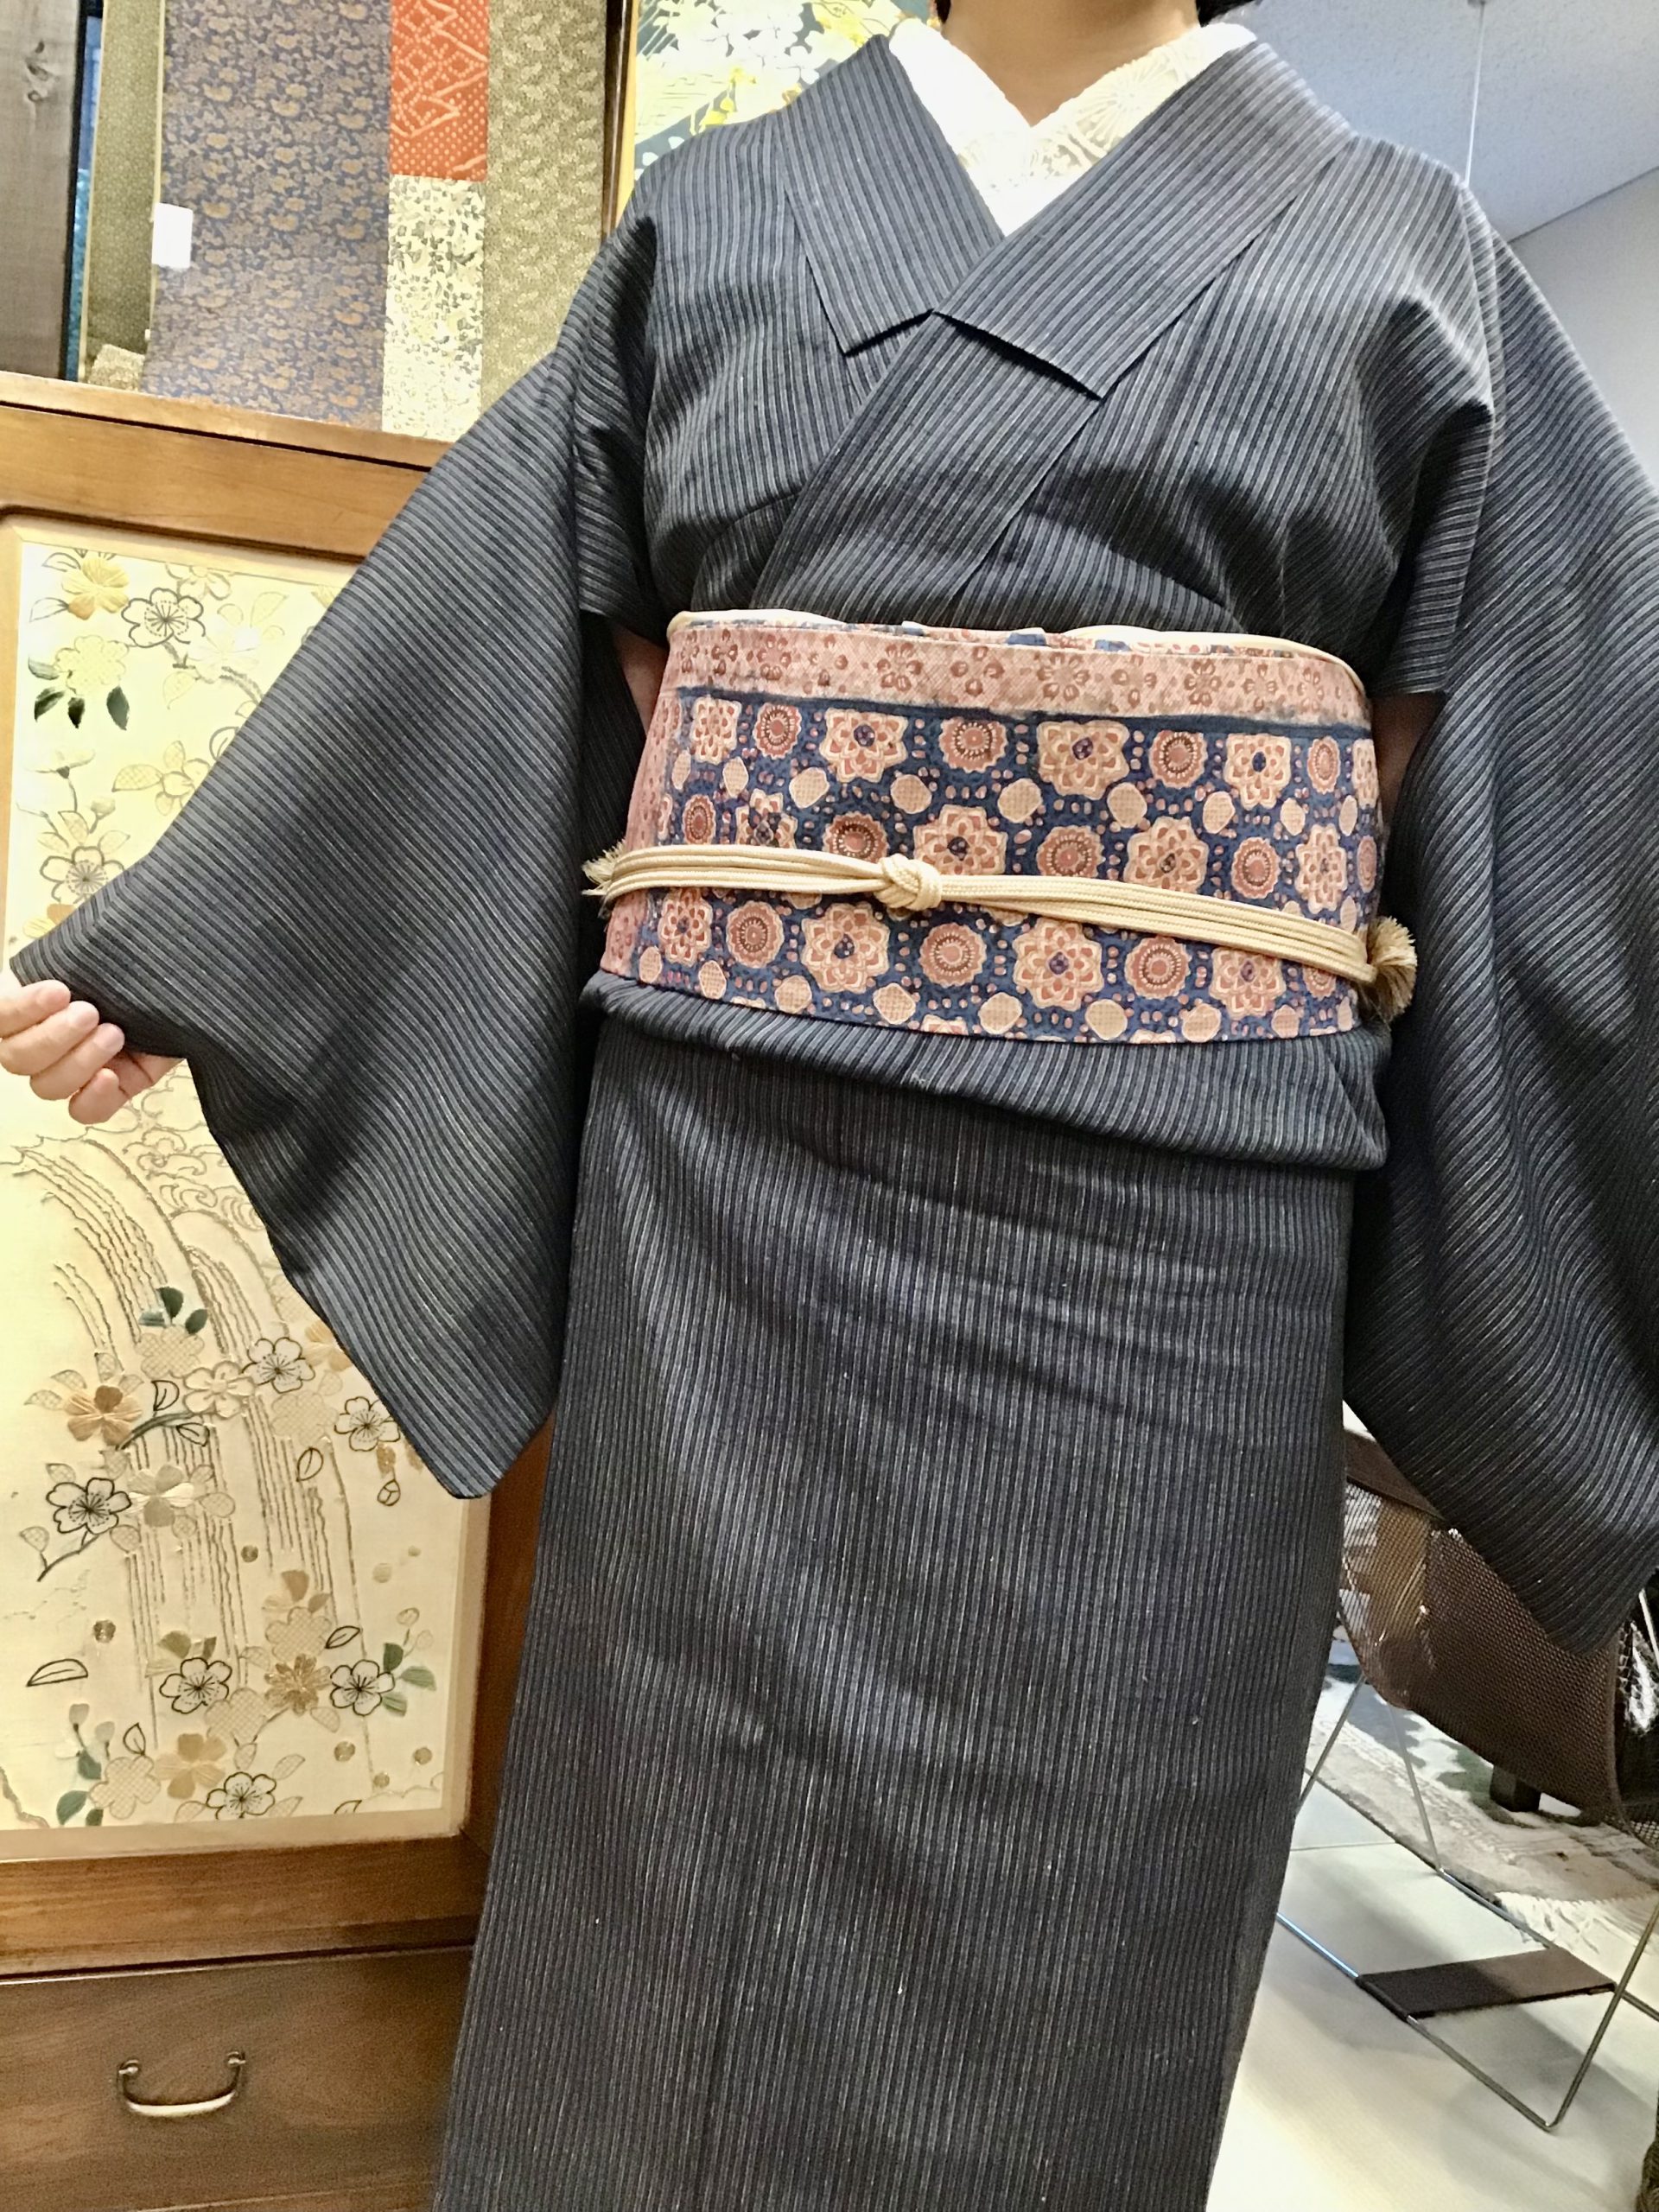 紬(繧繝ぼかし草木染め) 袋帯